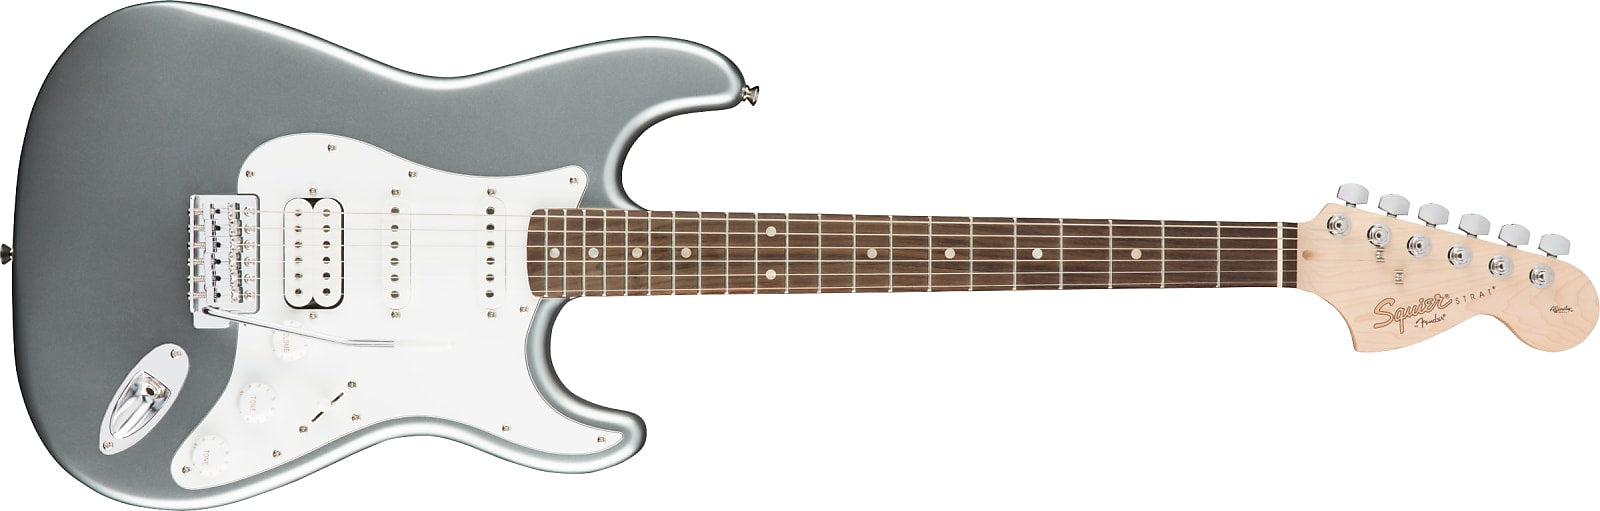 Fender Squier Affinity Series Stratocaster HSS, Laurel Fingerboard, Slick Silver